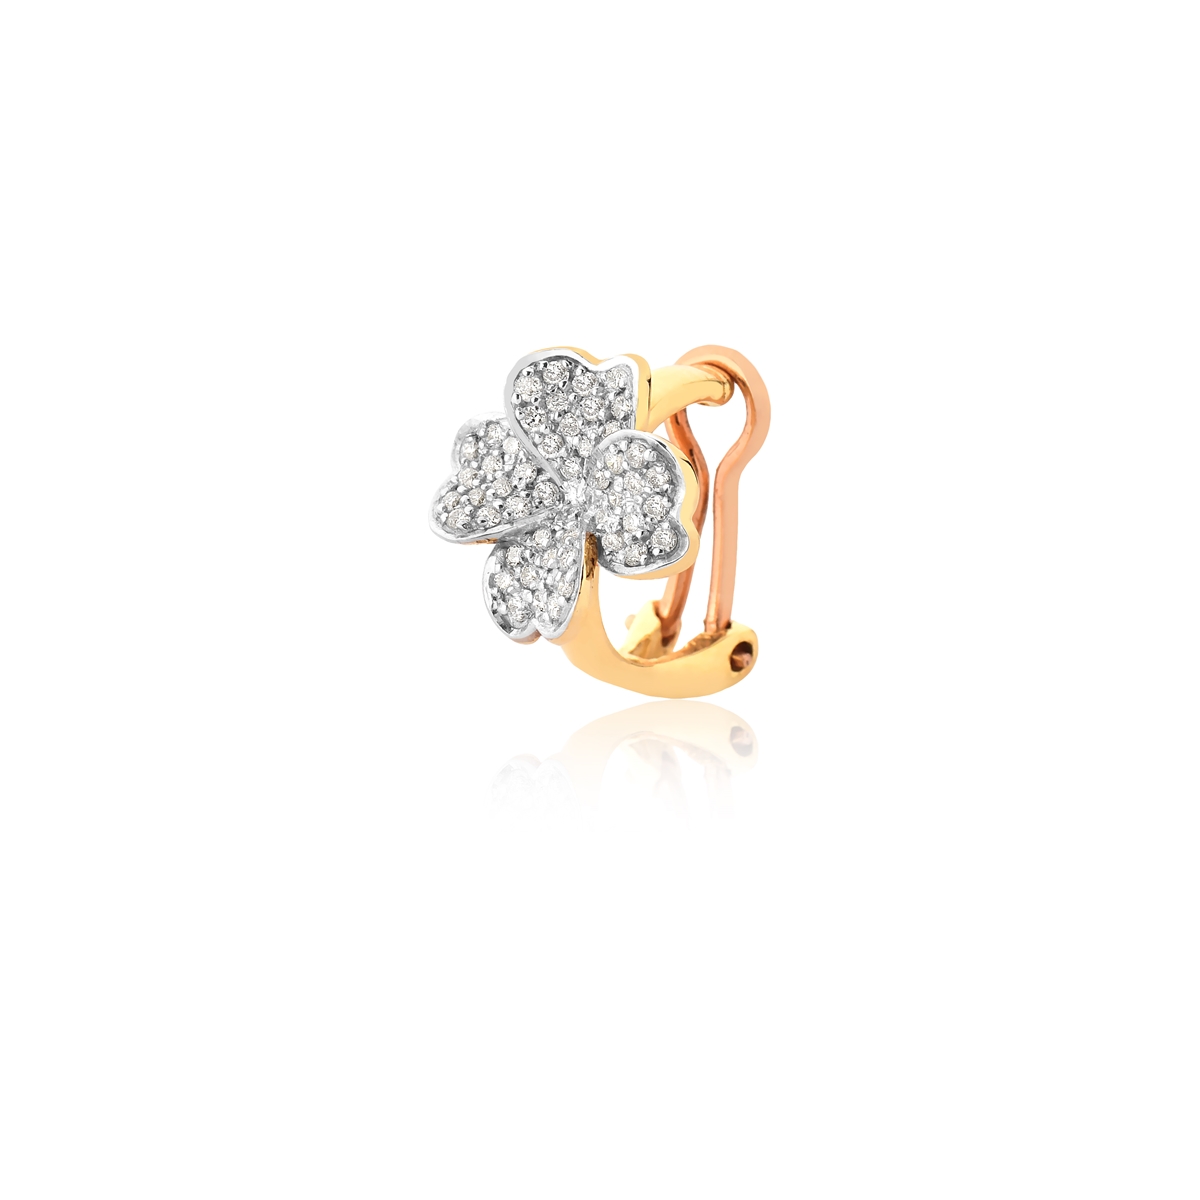 Piercing de Orelha Coliseu, ouro 18k com Diamantes e Gemas